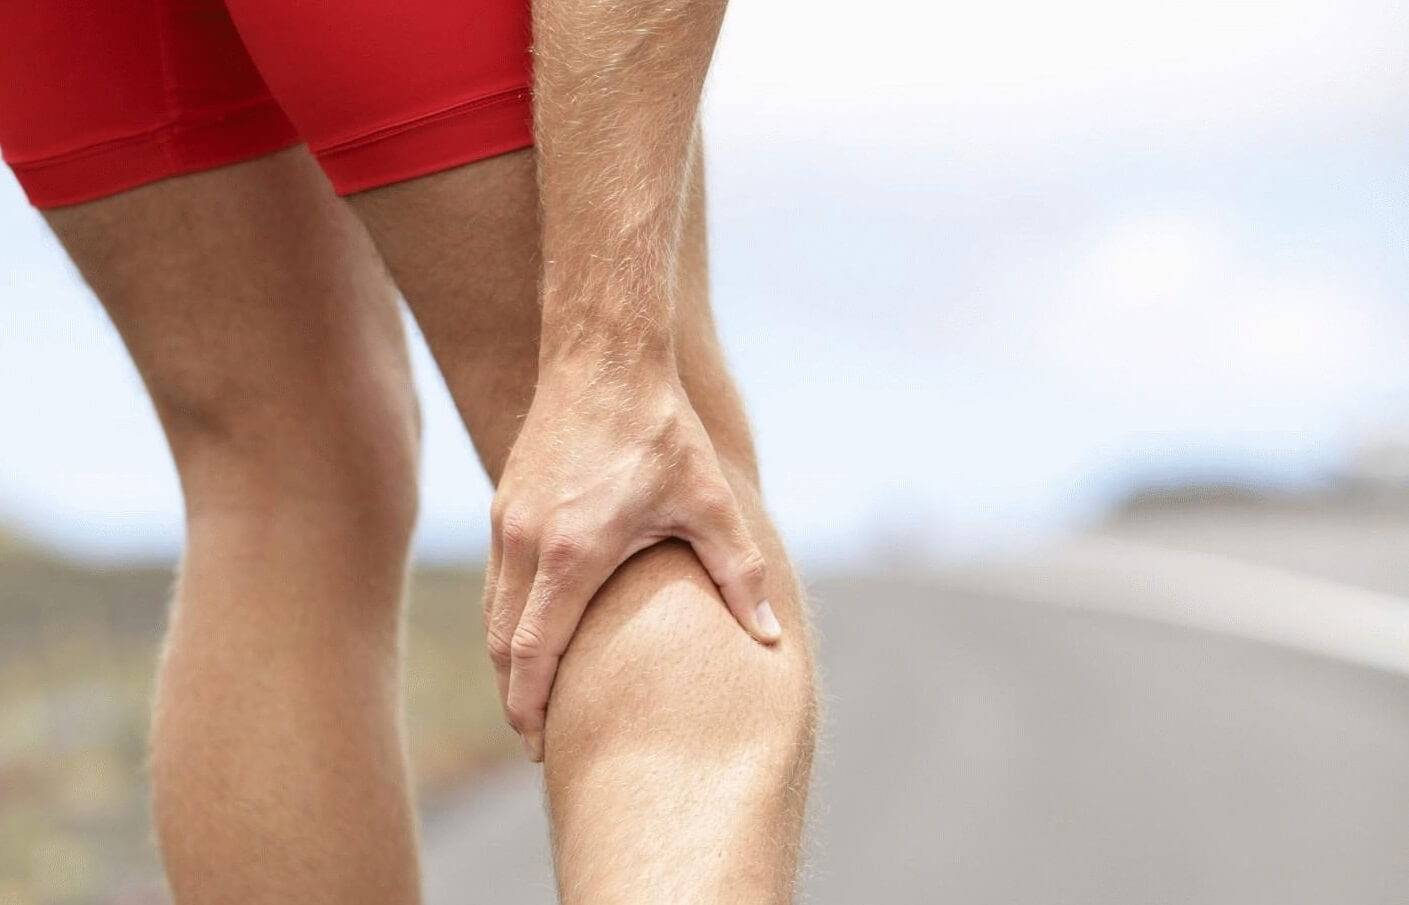 Судороги при беге: почему сводит мышцы во время пробежки